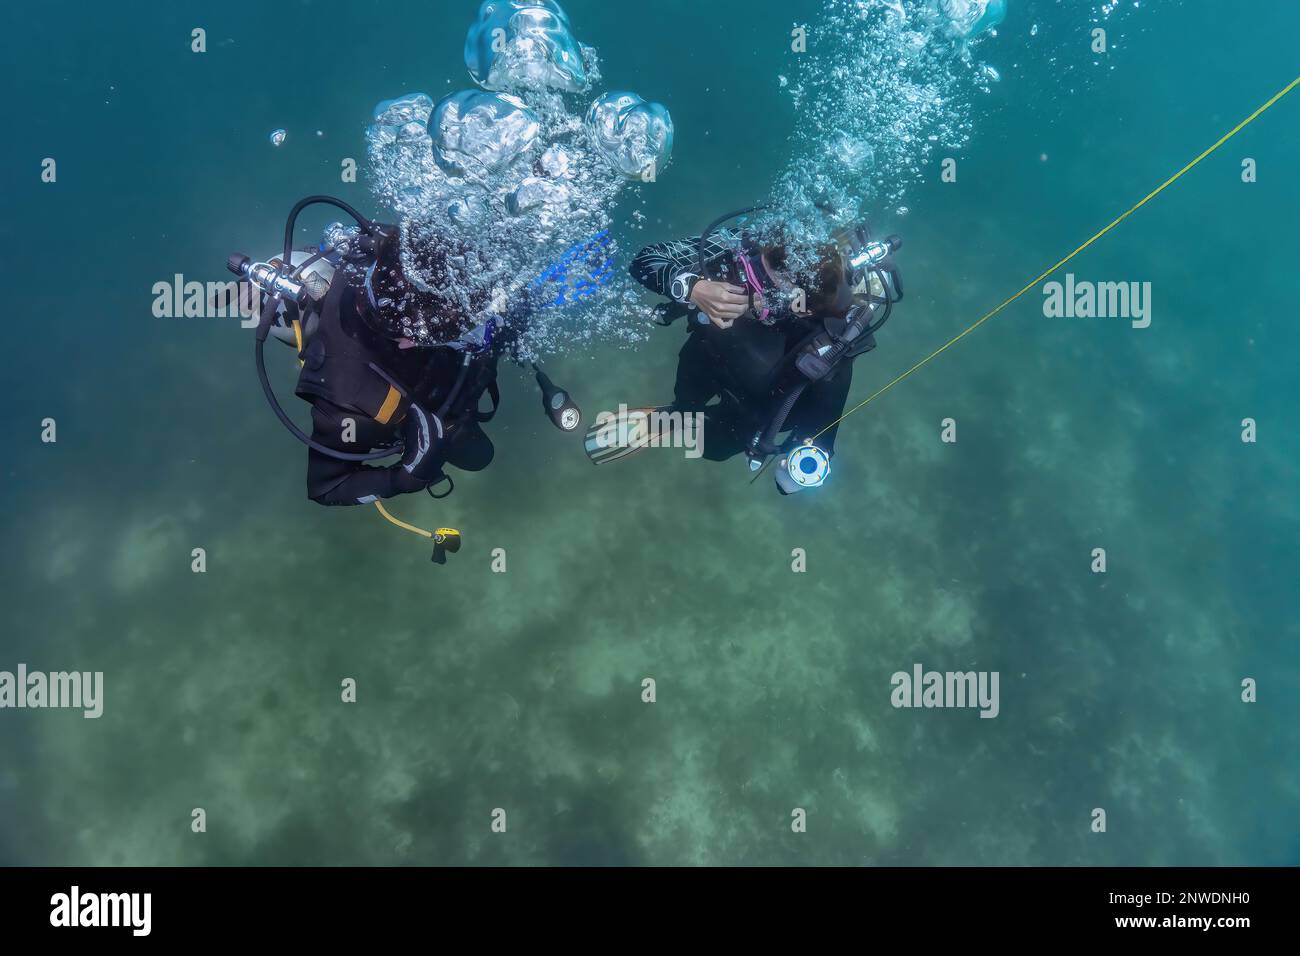 Il maestro subacqueo e l'allievo subacqueo si preparano ad ascendere dopo l'allenamento subacqueo in acque poco profonde. Attendono alla sosta ascendente per l'immersione per essere pronti per la decompressione. Foto Stock